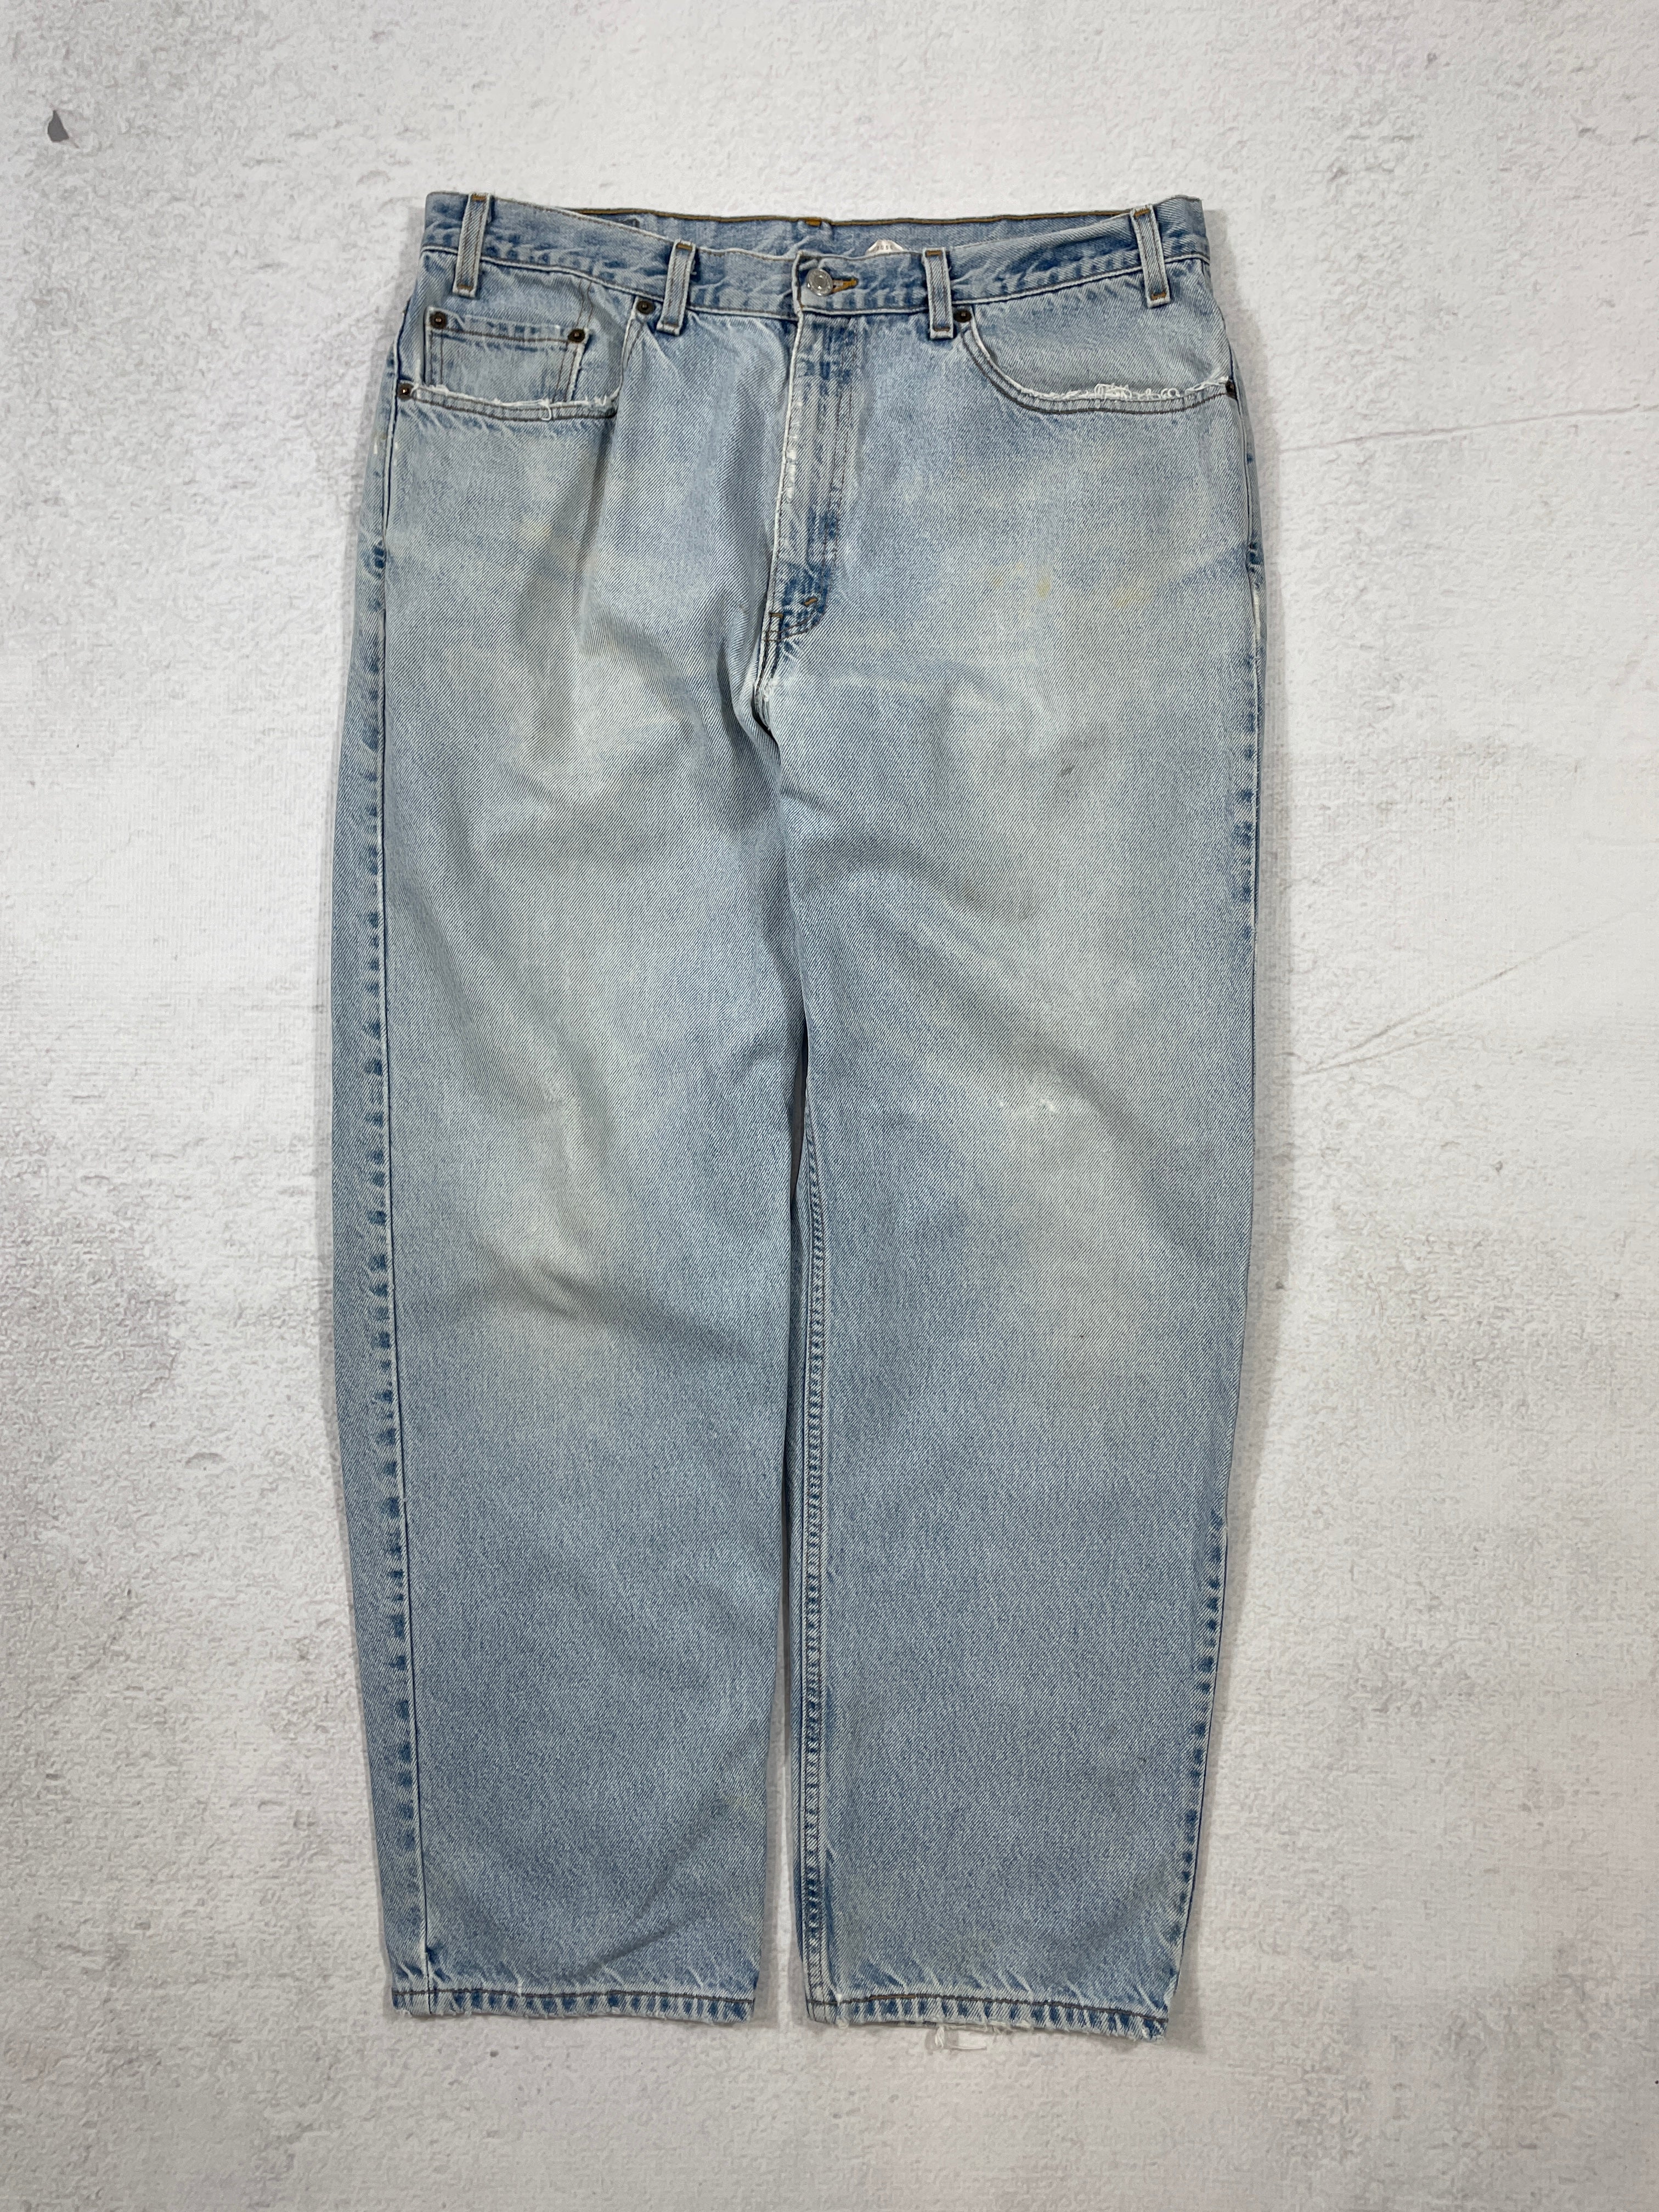 Vintage Levis Jeans - Men's 38Wx30L